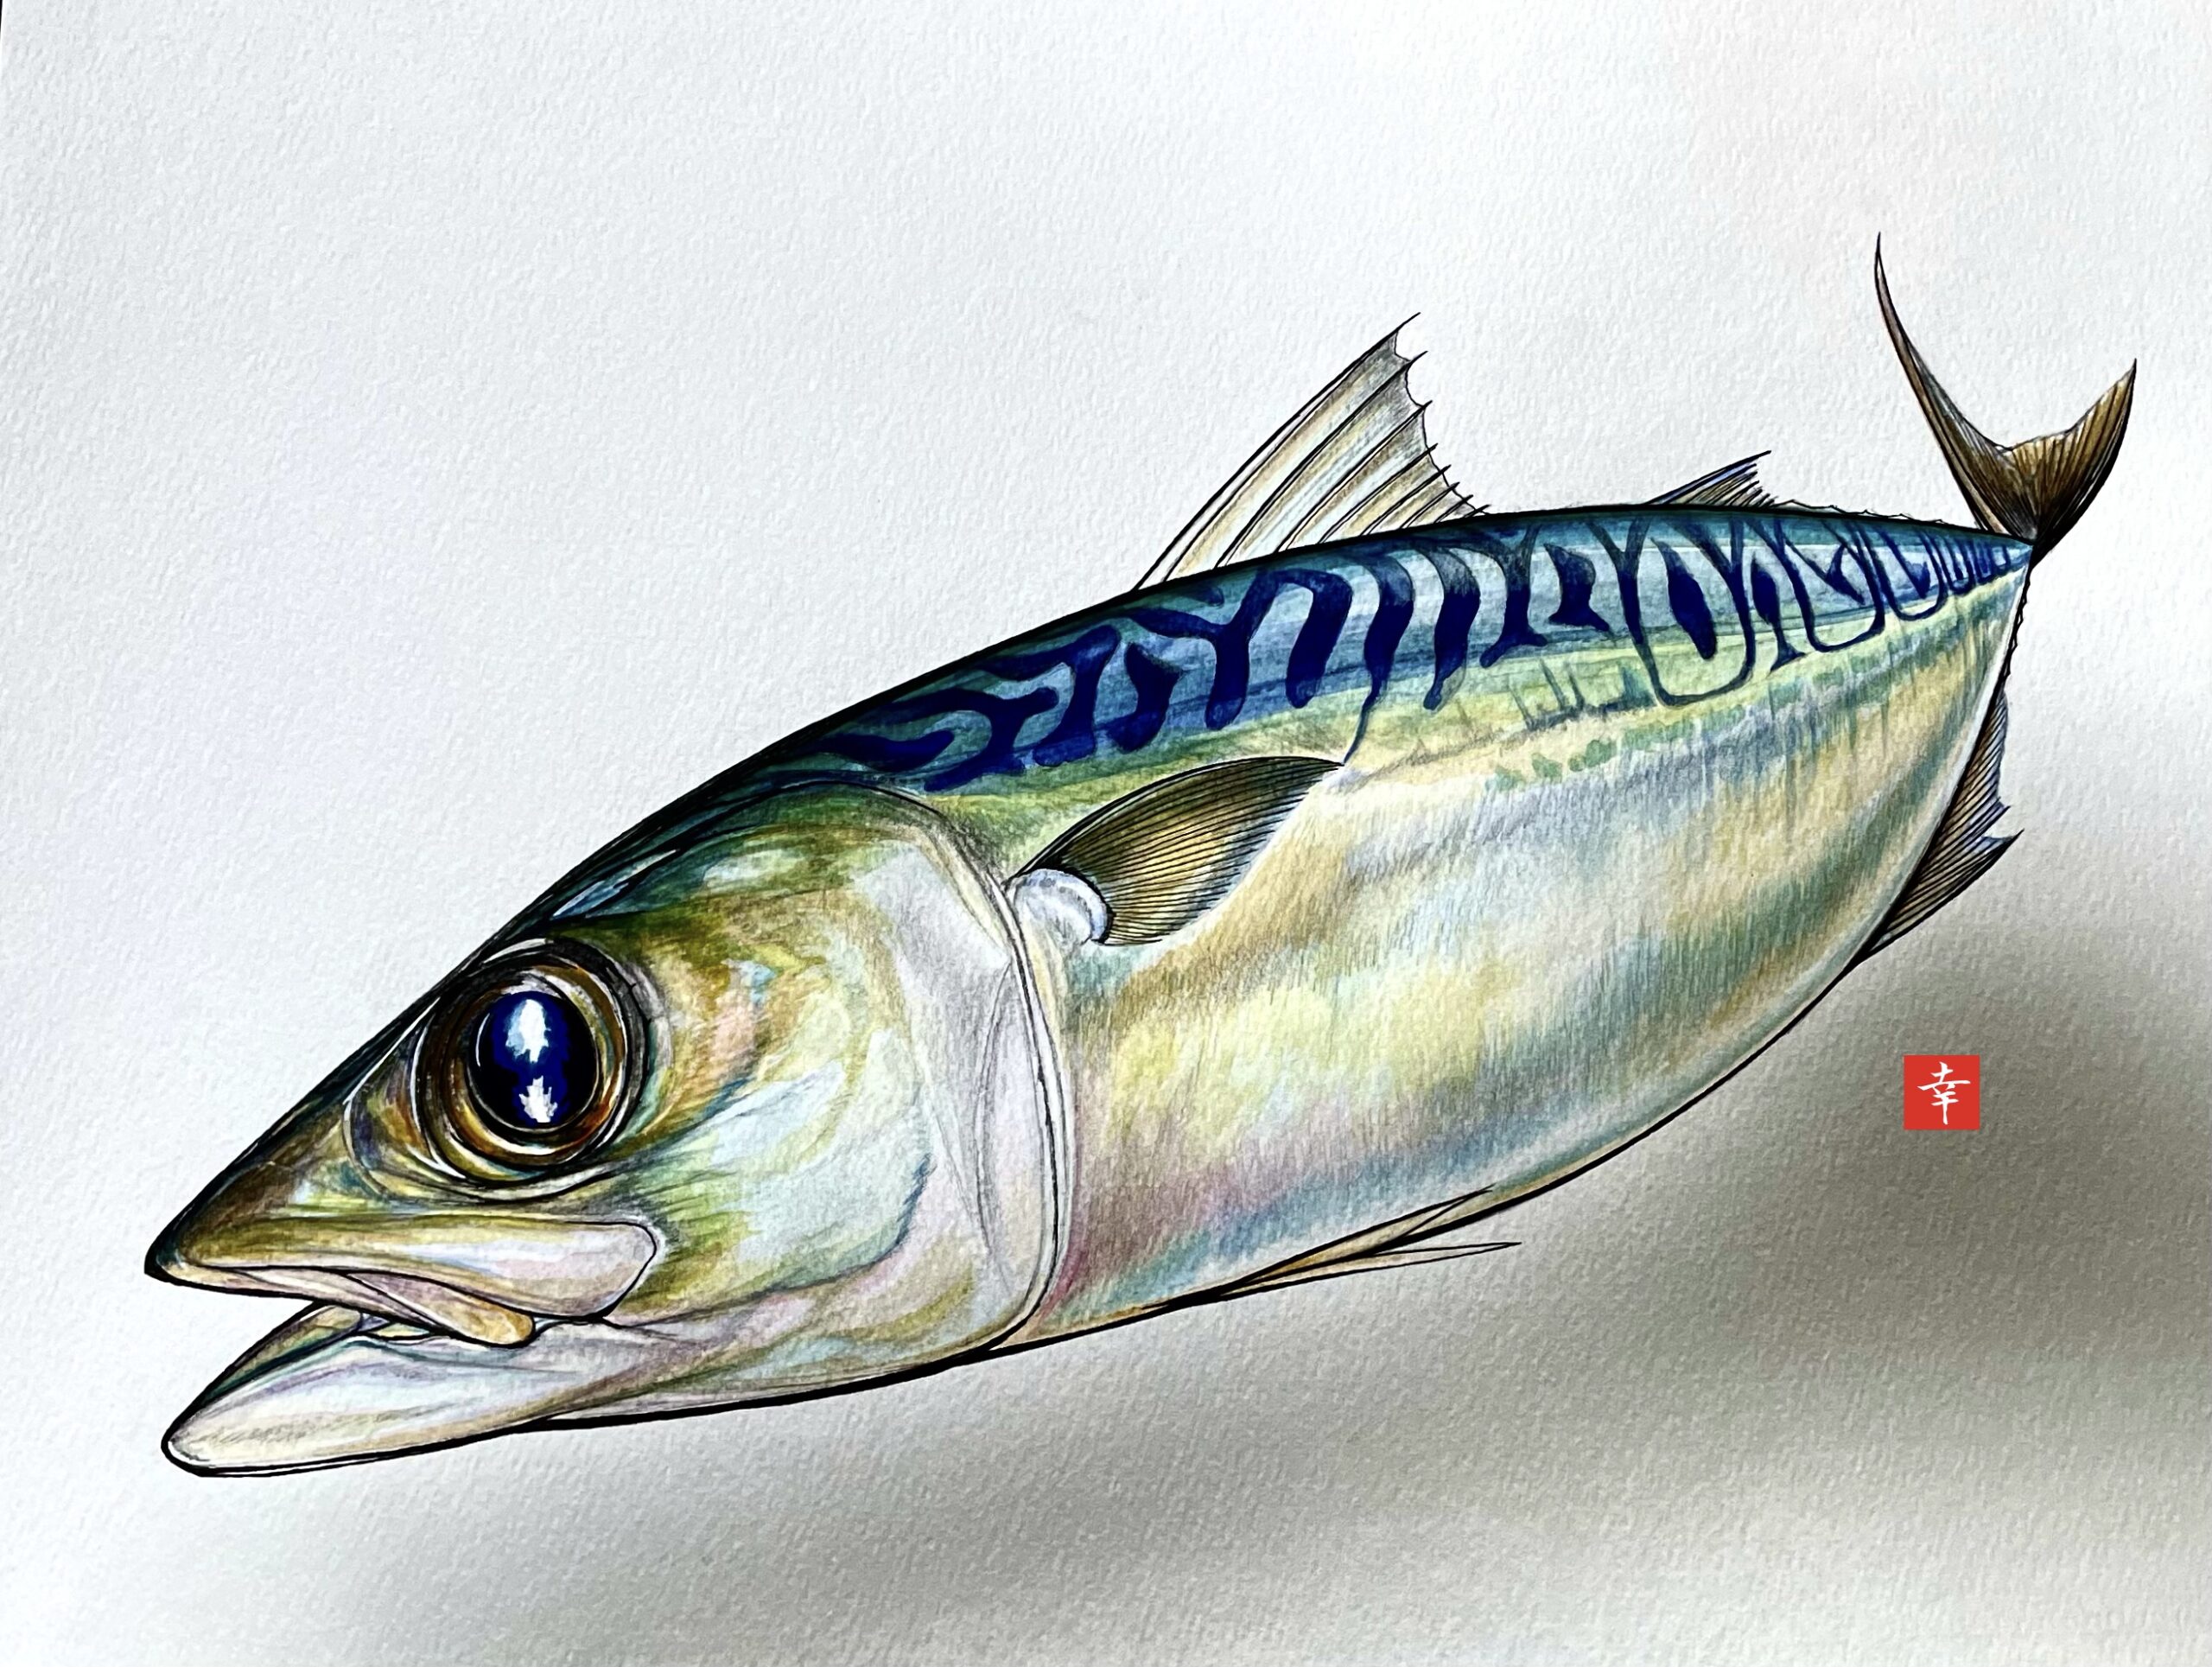 新企画 イラストで見る旬の魚 松輪のサバ 横浜丸魚株式会社